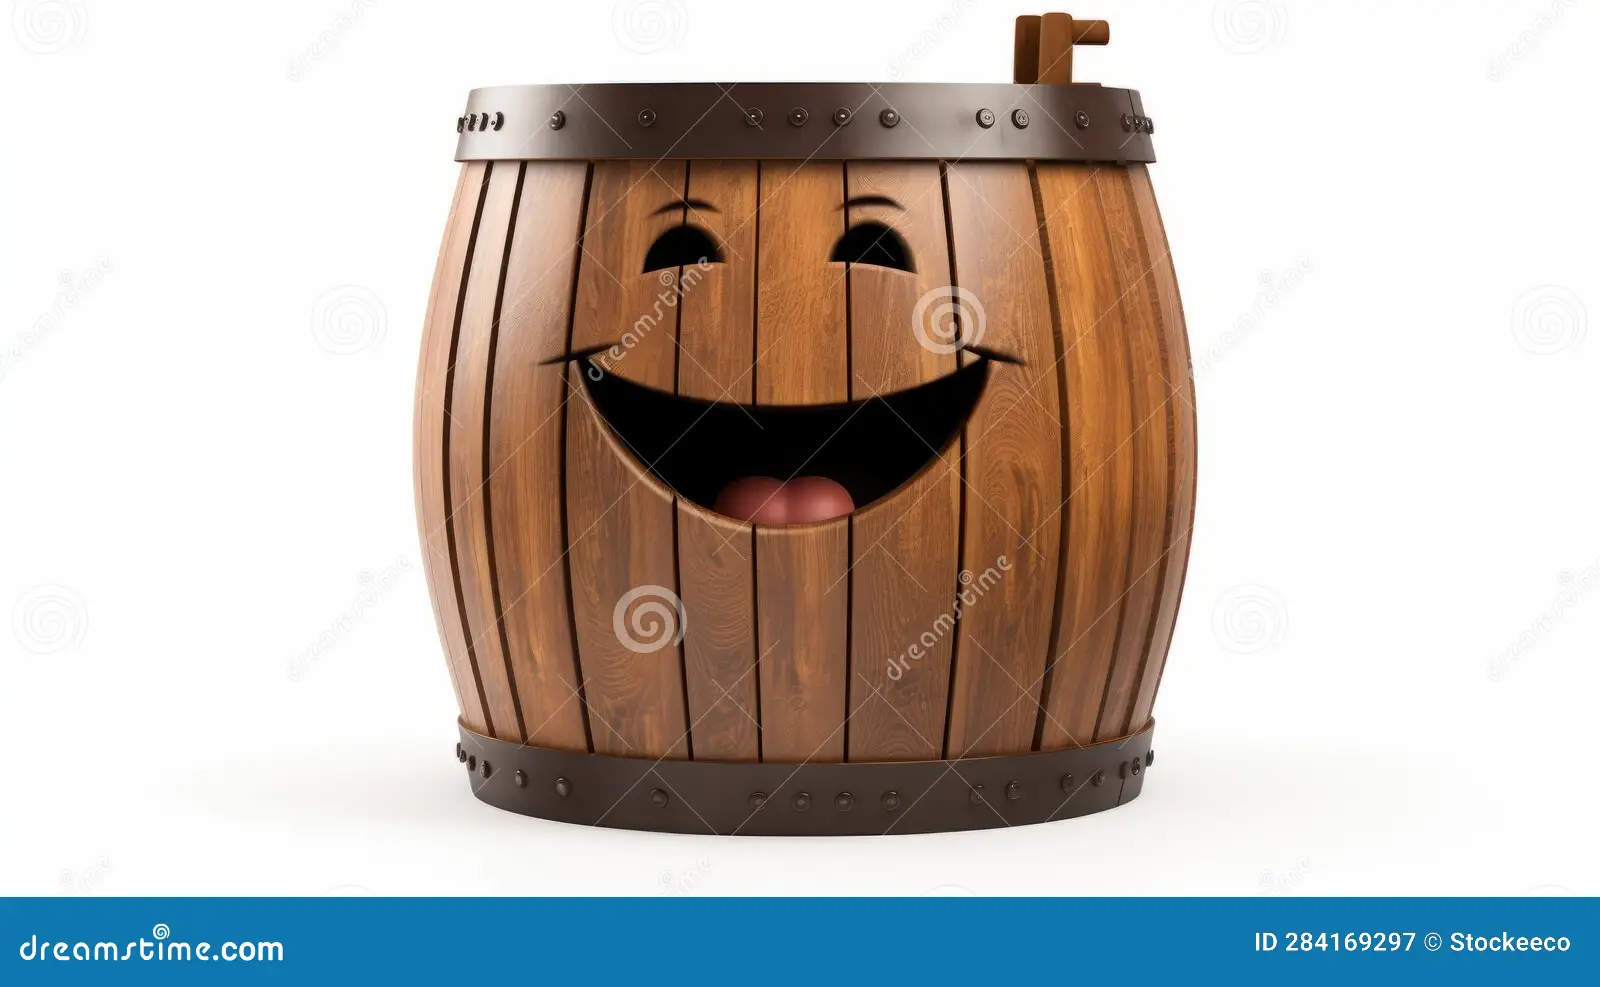 Barrel Puns